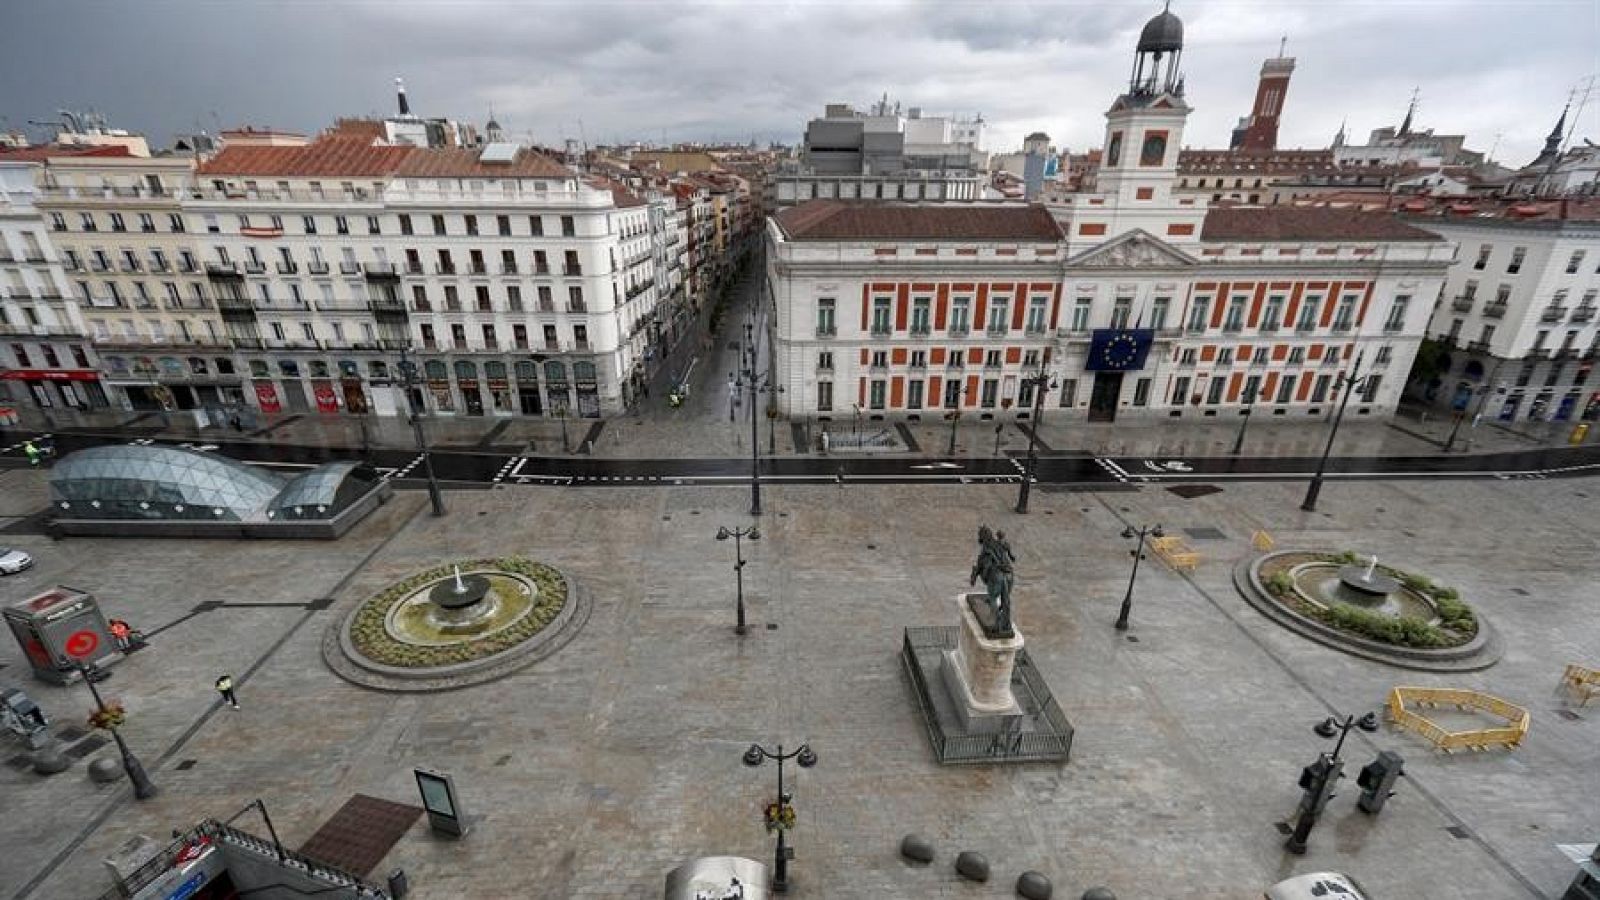 Vista de la Plaza del Sol vacía, lugar donde se inició hace 9 años el movimiento político-social del 15M.